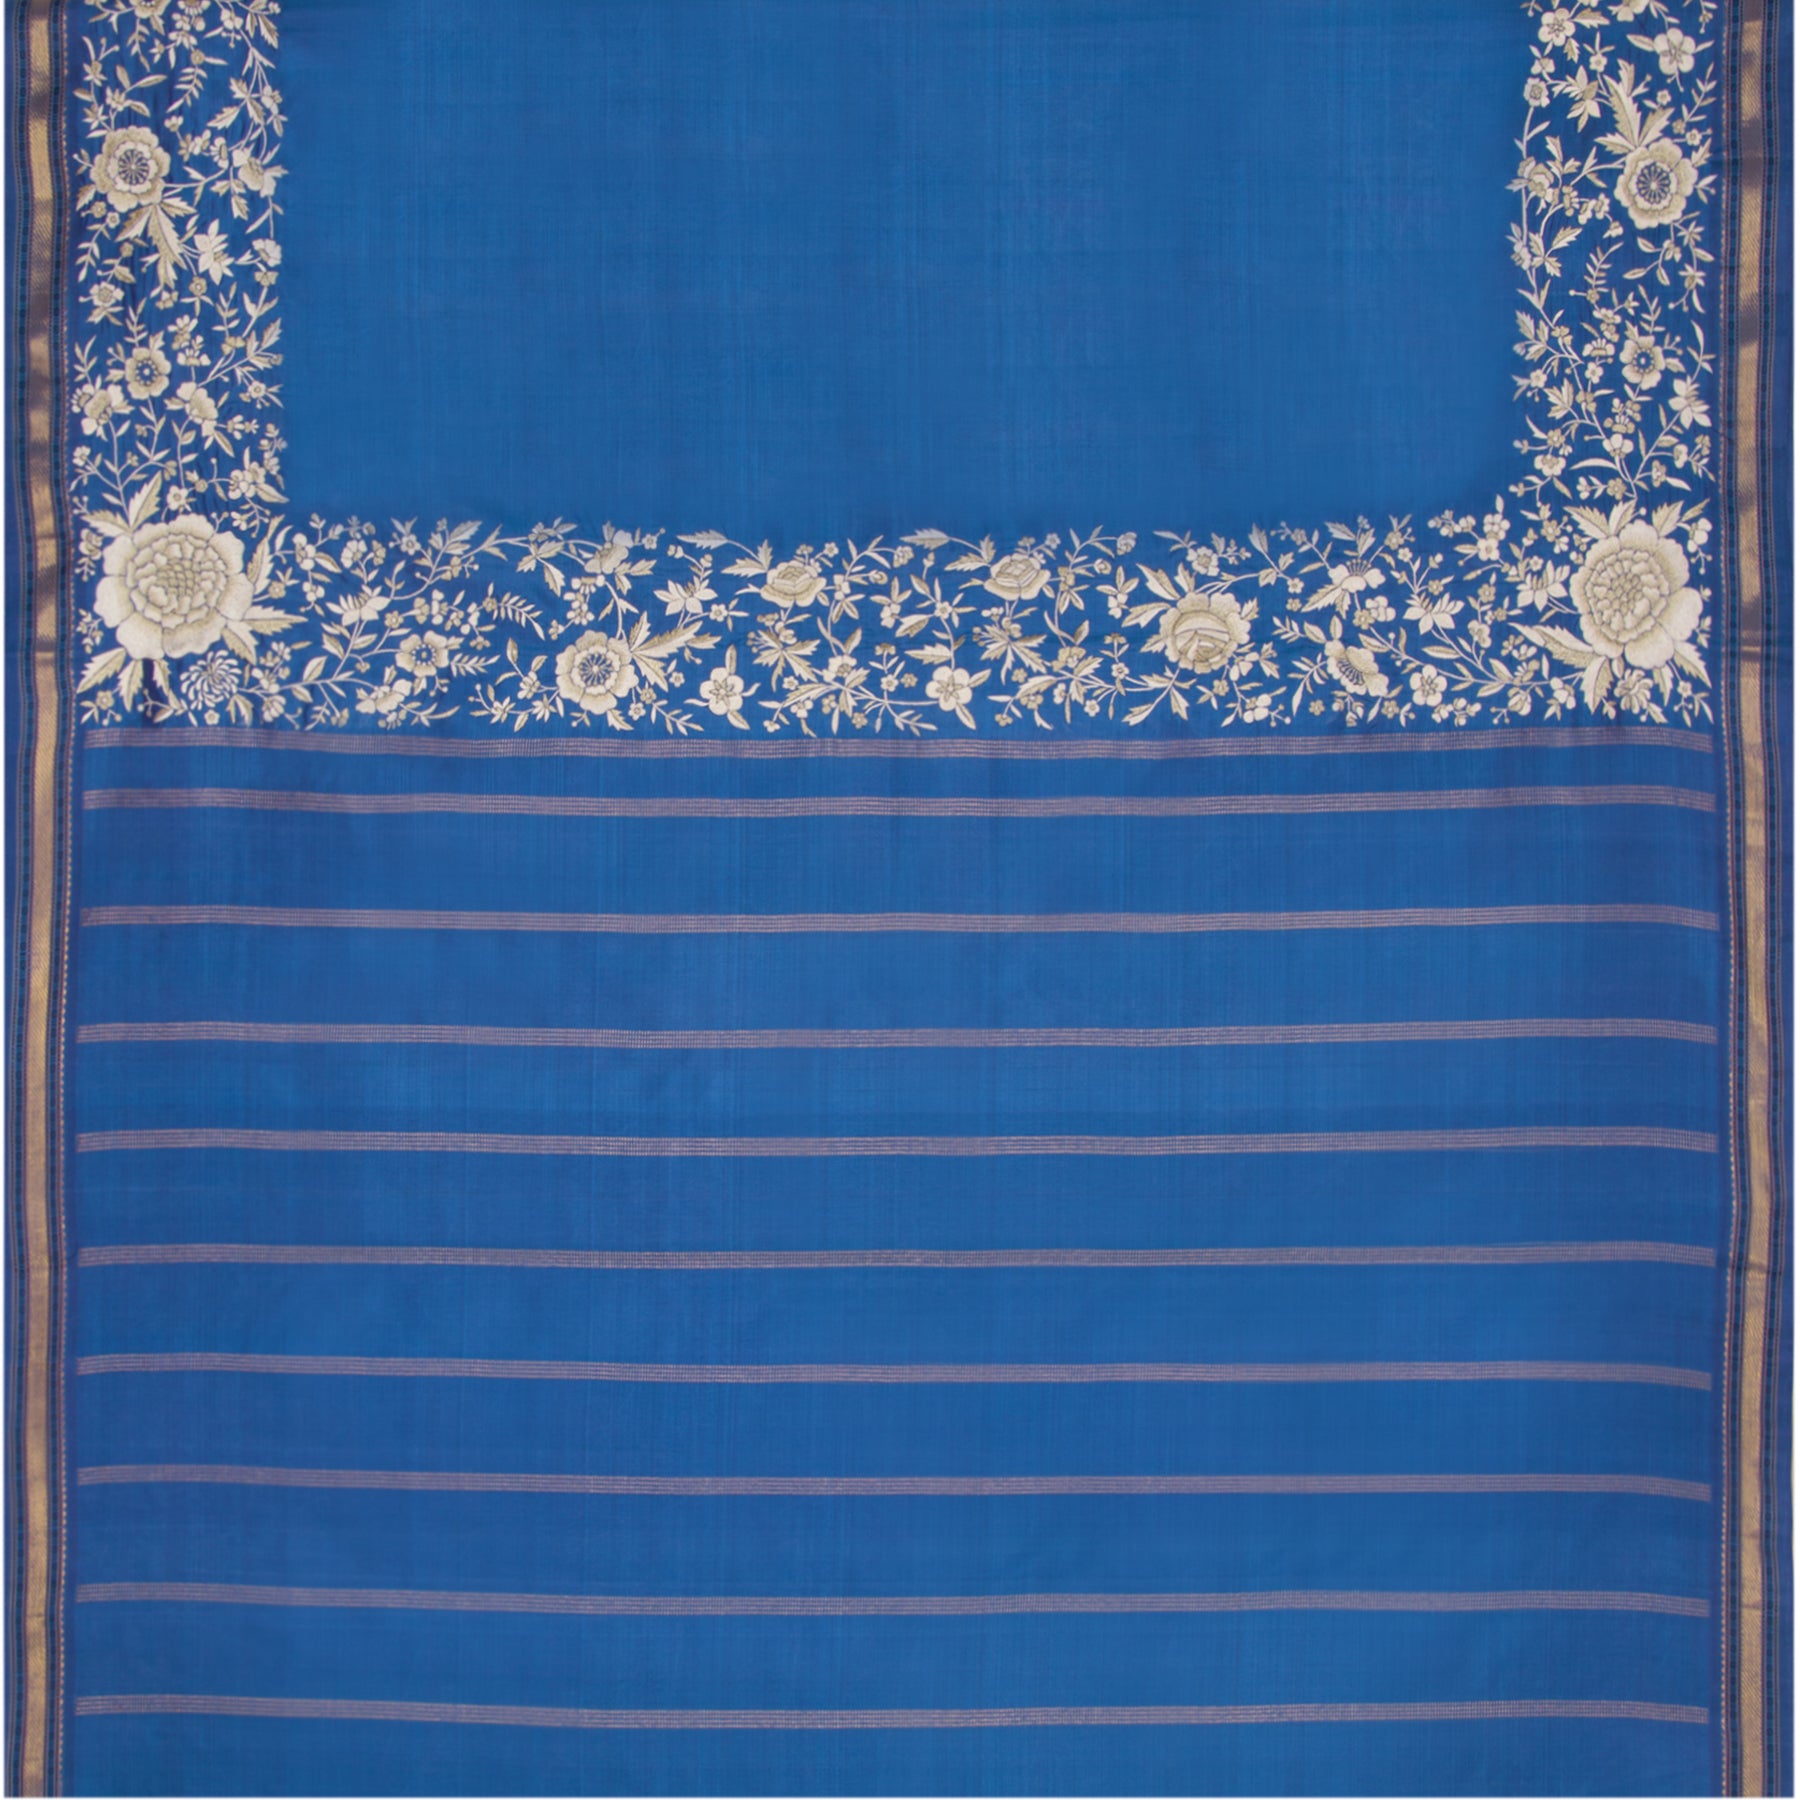 Kanakavalli X Ashdeen Kanjivaram Silk Sari 21-040-HS001-01980 - Full View